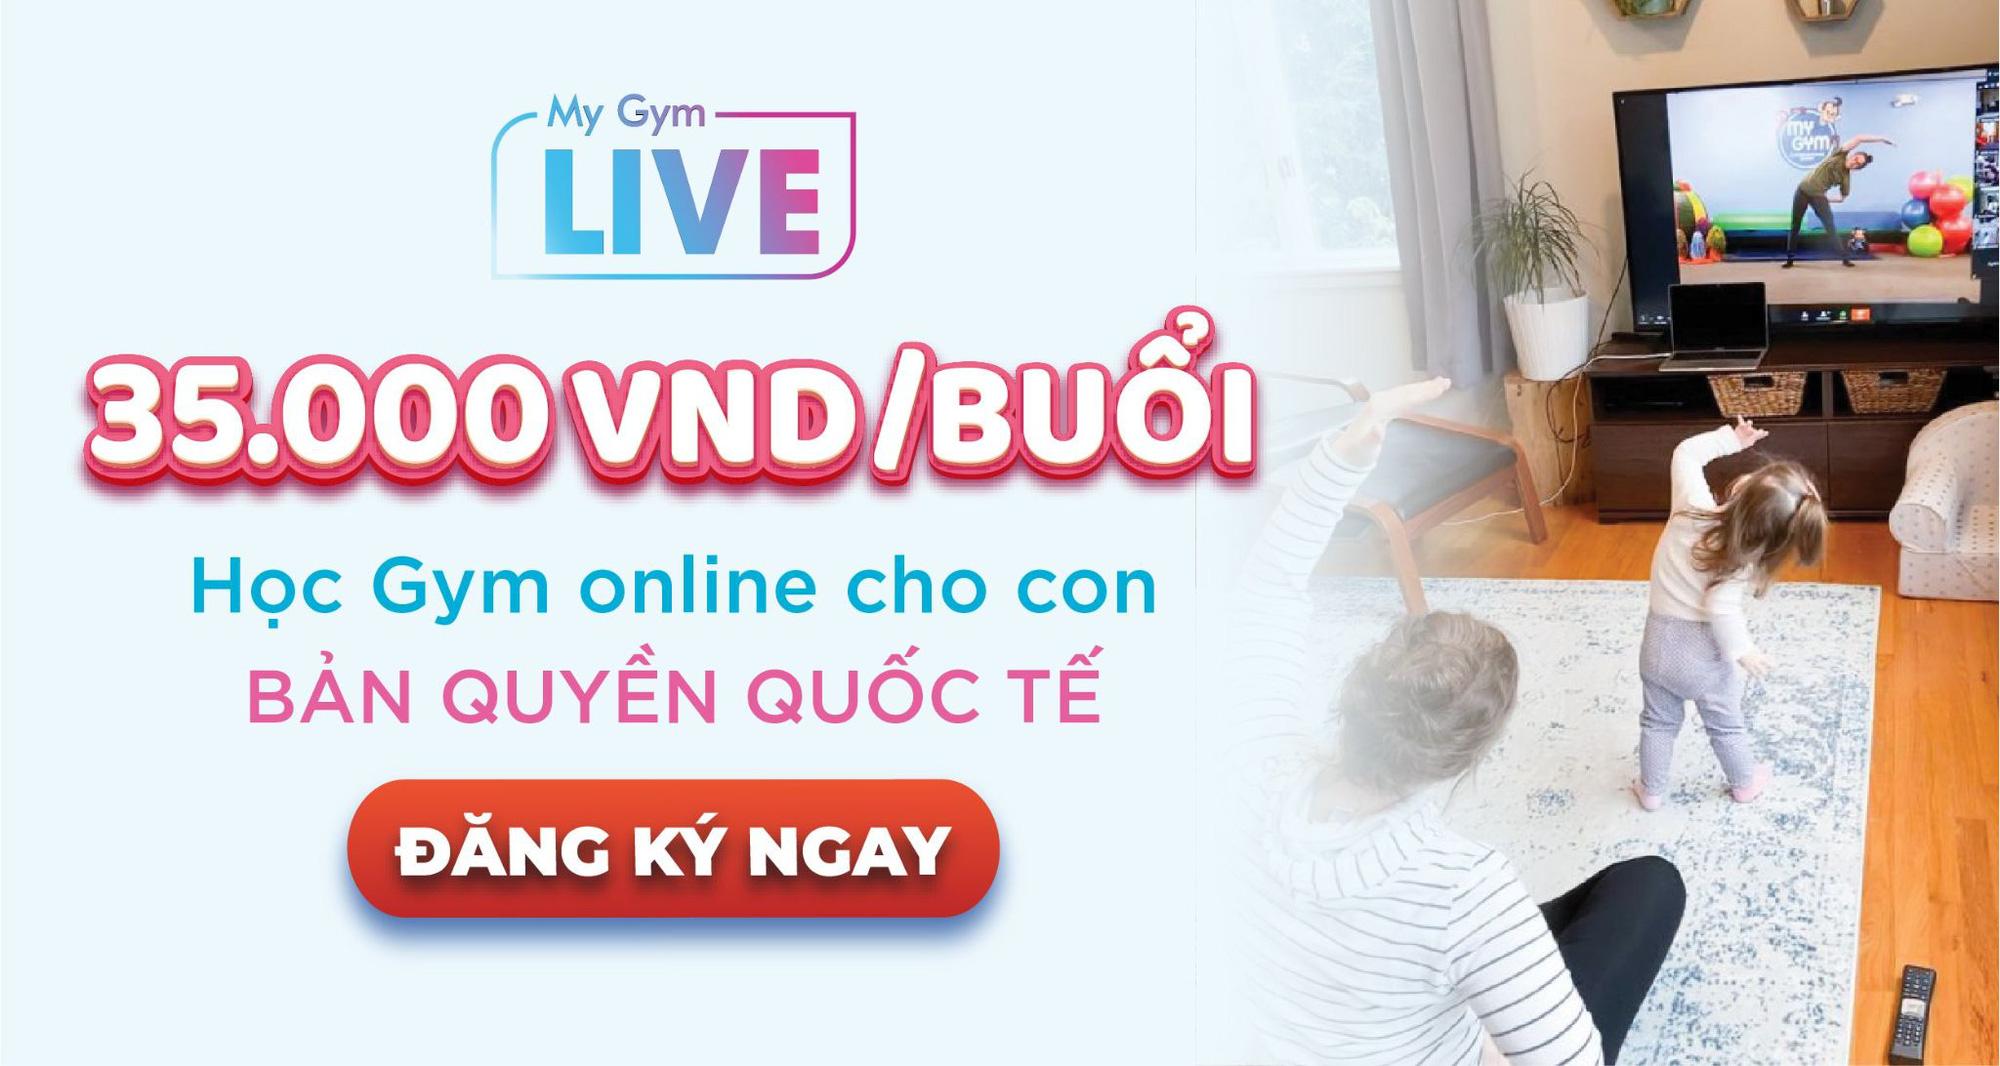 Ra mắt khóa học Gym Online cho trẻ Việt Nam, giáo trình tương tự trẻ em Mỹ - Ảnh 5.